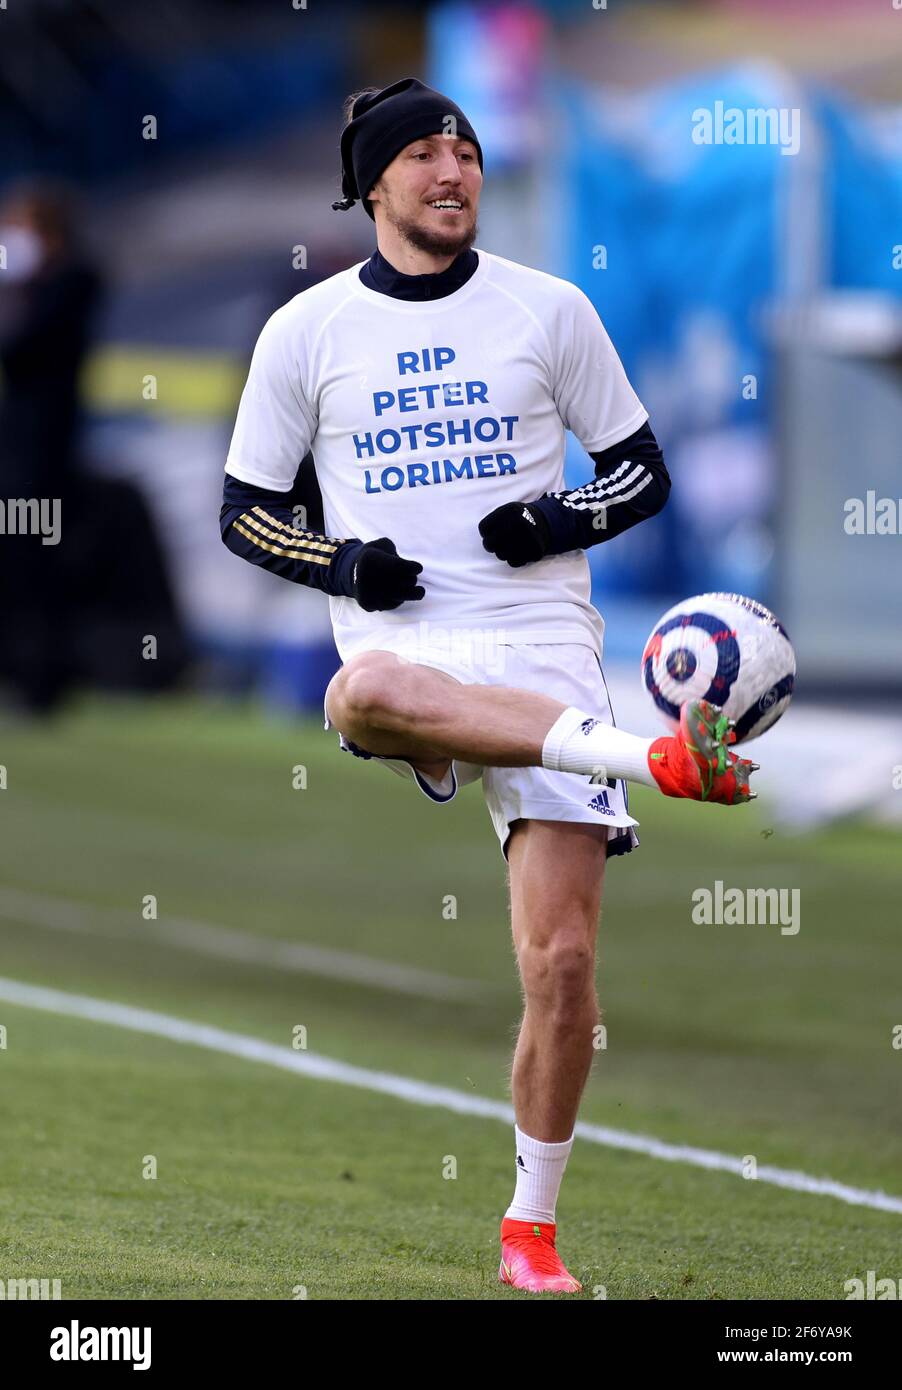 Luke Ayling di Leeds United indossa una t-shirt in omaggio a Peter Lorimer durante il warm up prima della partita della Premier League a Elland Road, Leeds. Data di emissione: Sabato 3 aprile 2021. Foto Stock